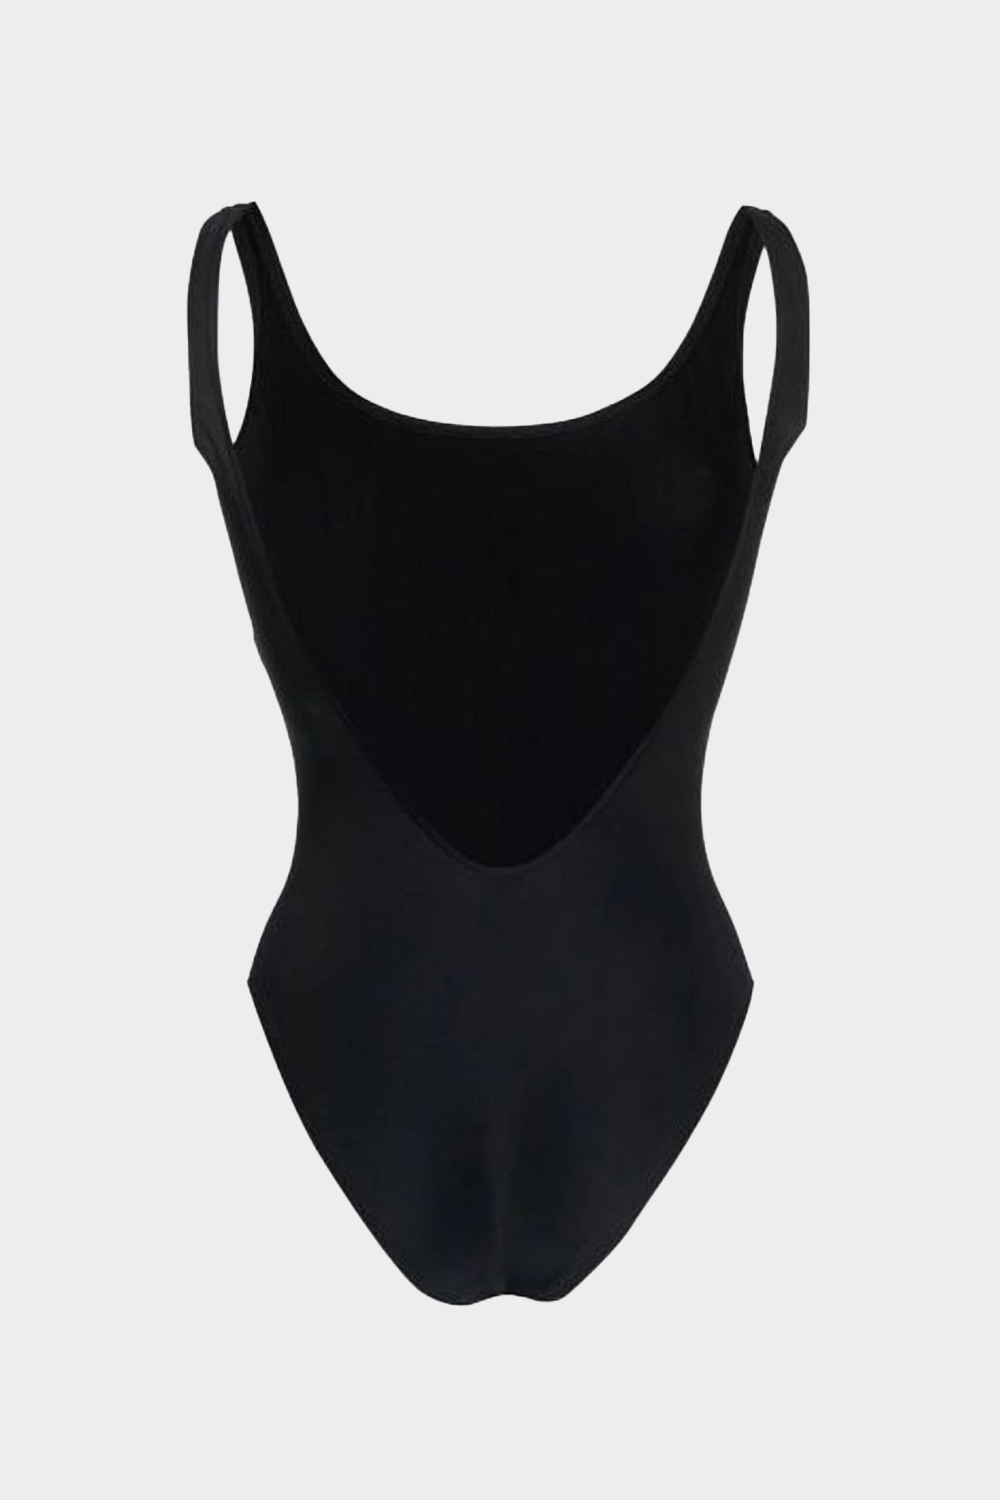 בגד ים שלם MOSCHINO לנשים בצבע שחור MOSCHINO Vendome online | ונדום .